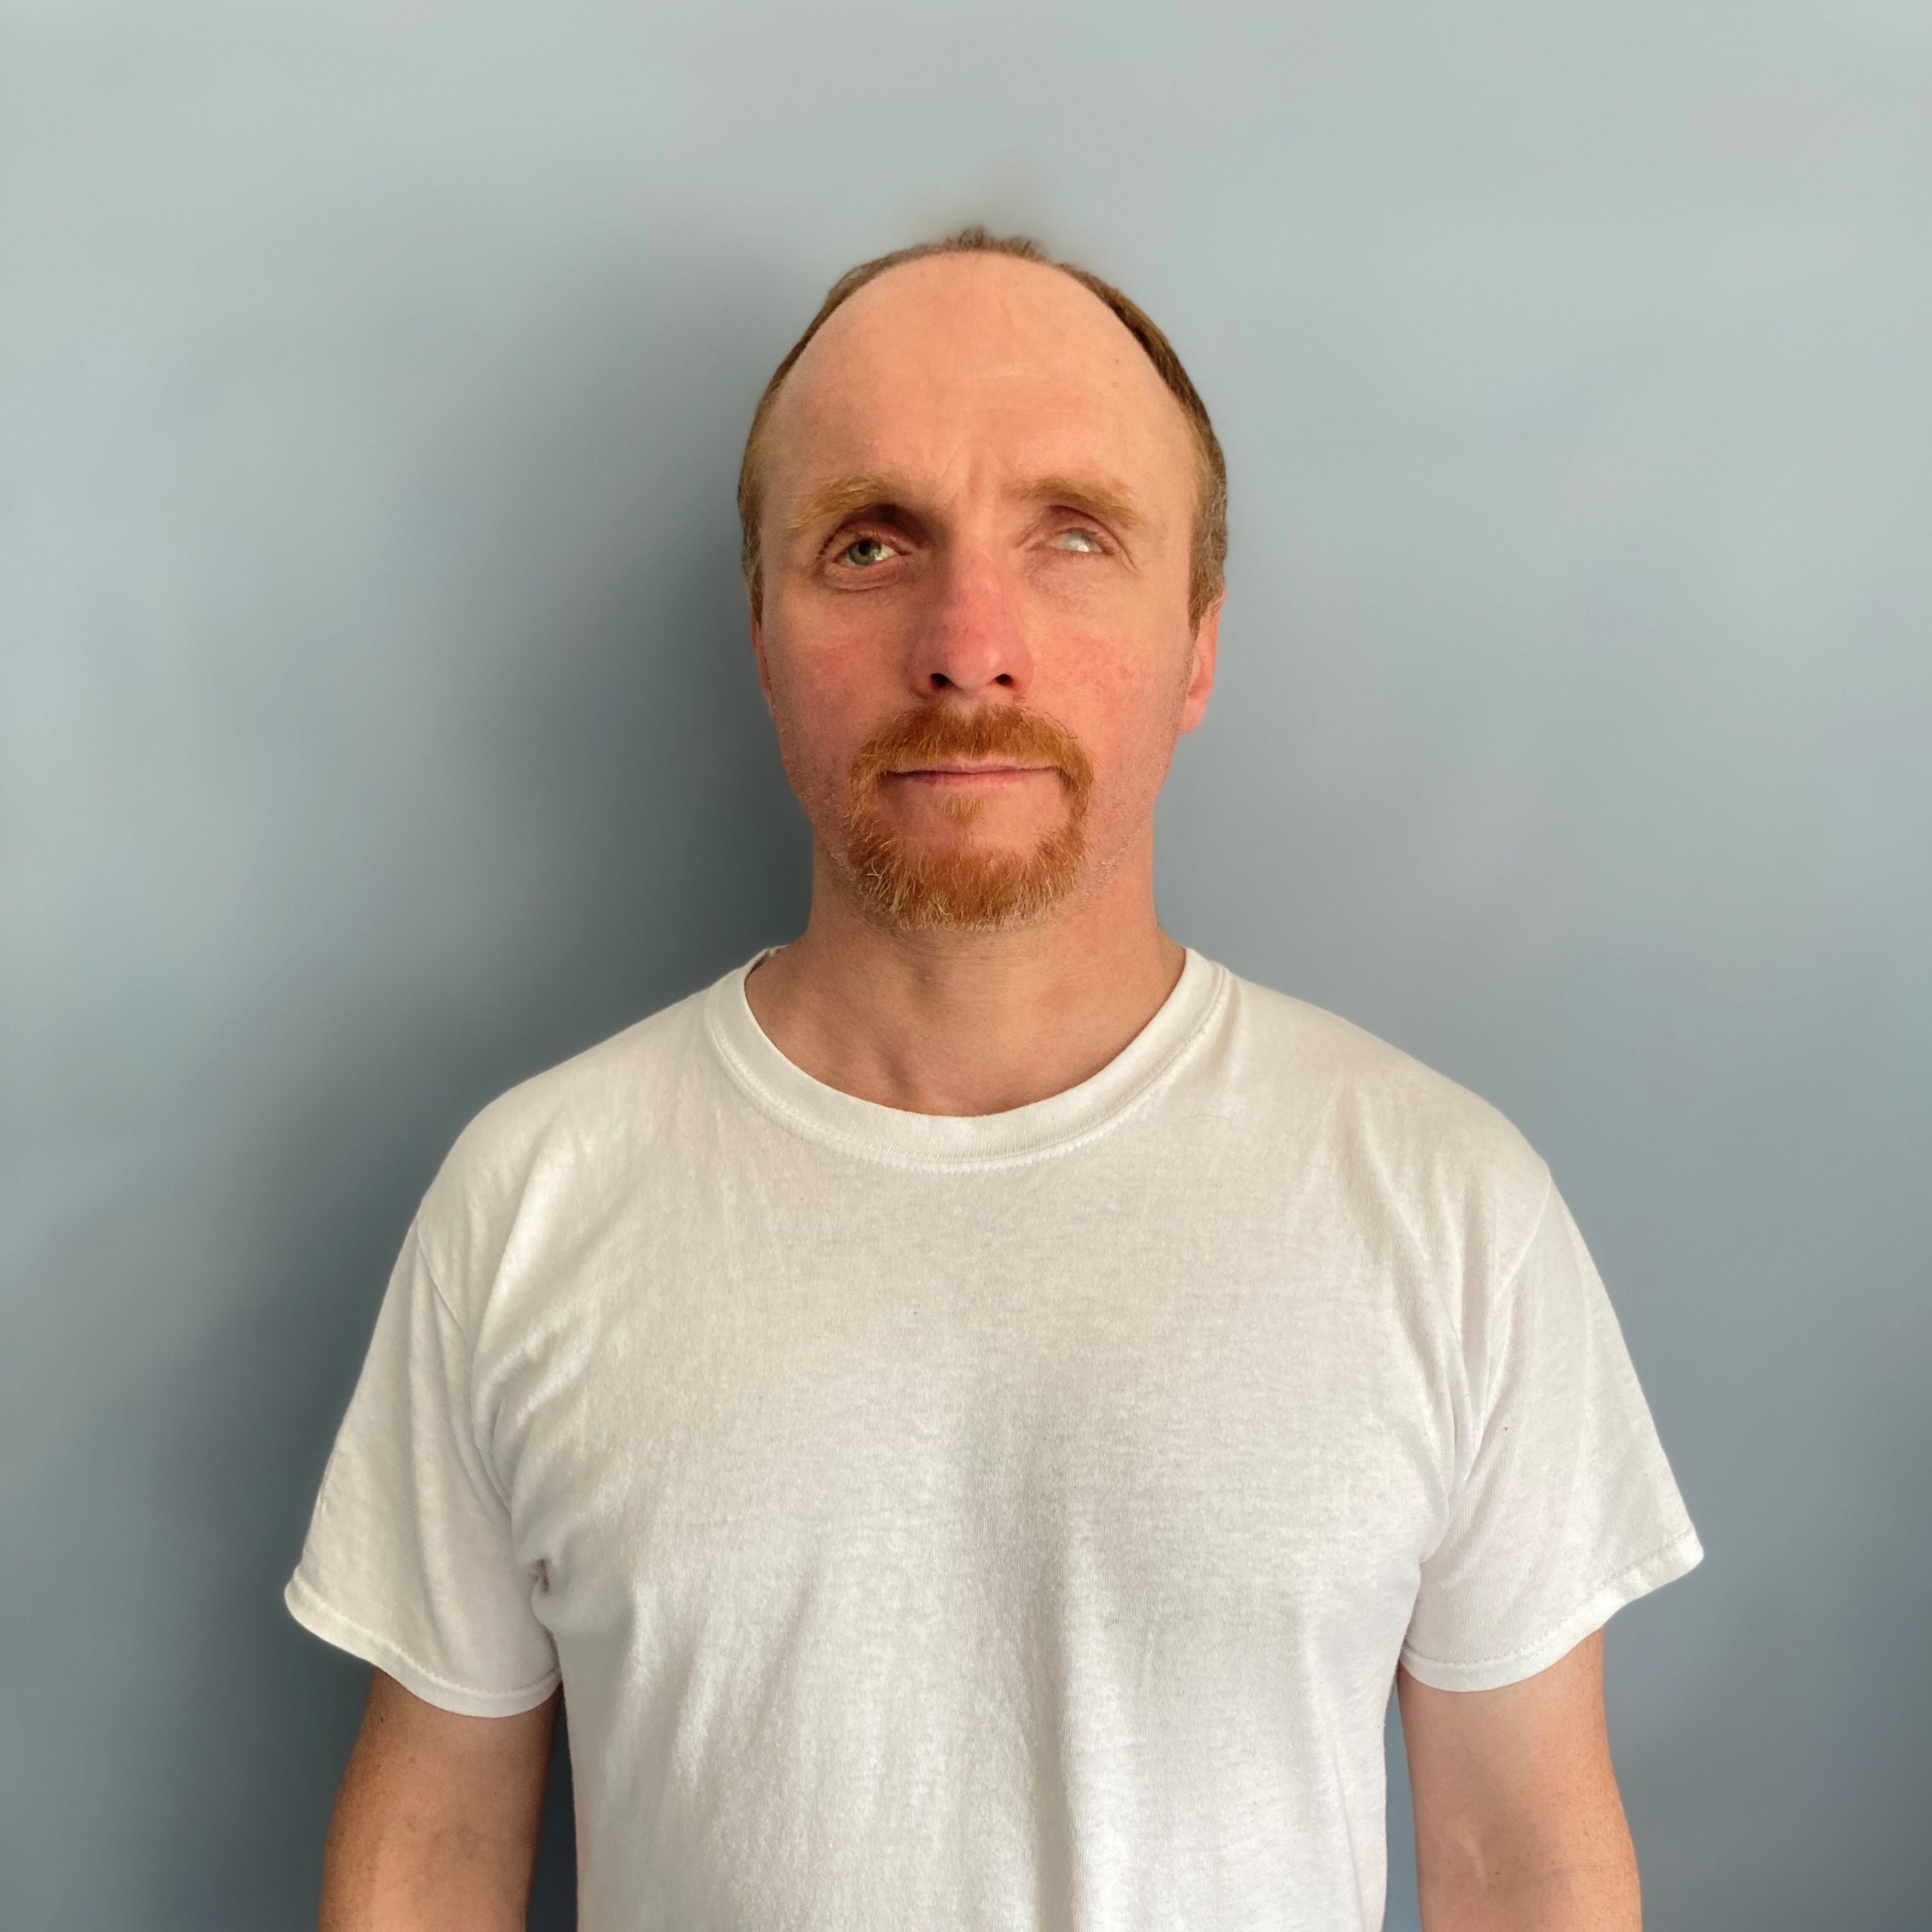 Markus Böttner, Kundendienst, mit kurzem, rotbraunen Haar, hoher Stirn und einem rotbraunen Bart steht in einem weißen T-Shirt vor einer grauen Wand und schaut freundlich in die Kamera.